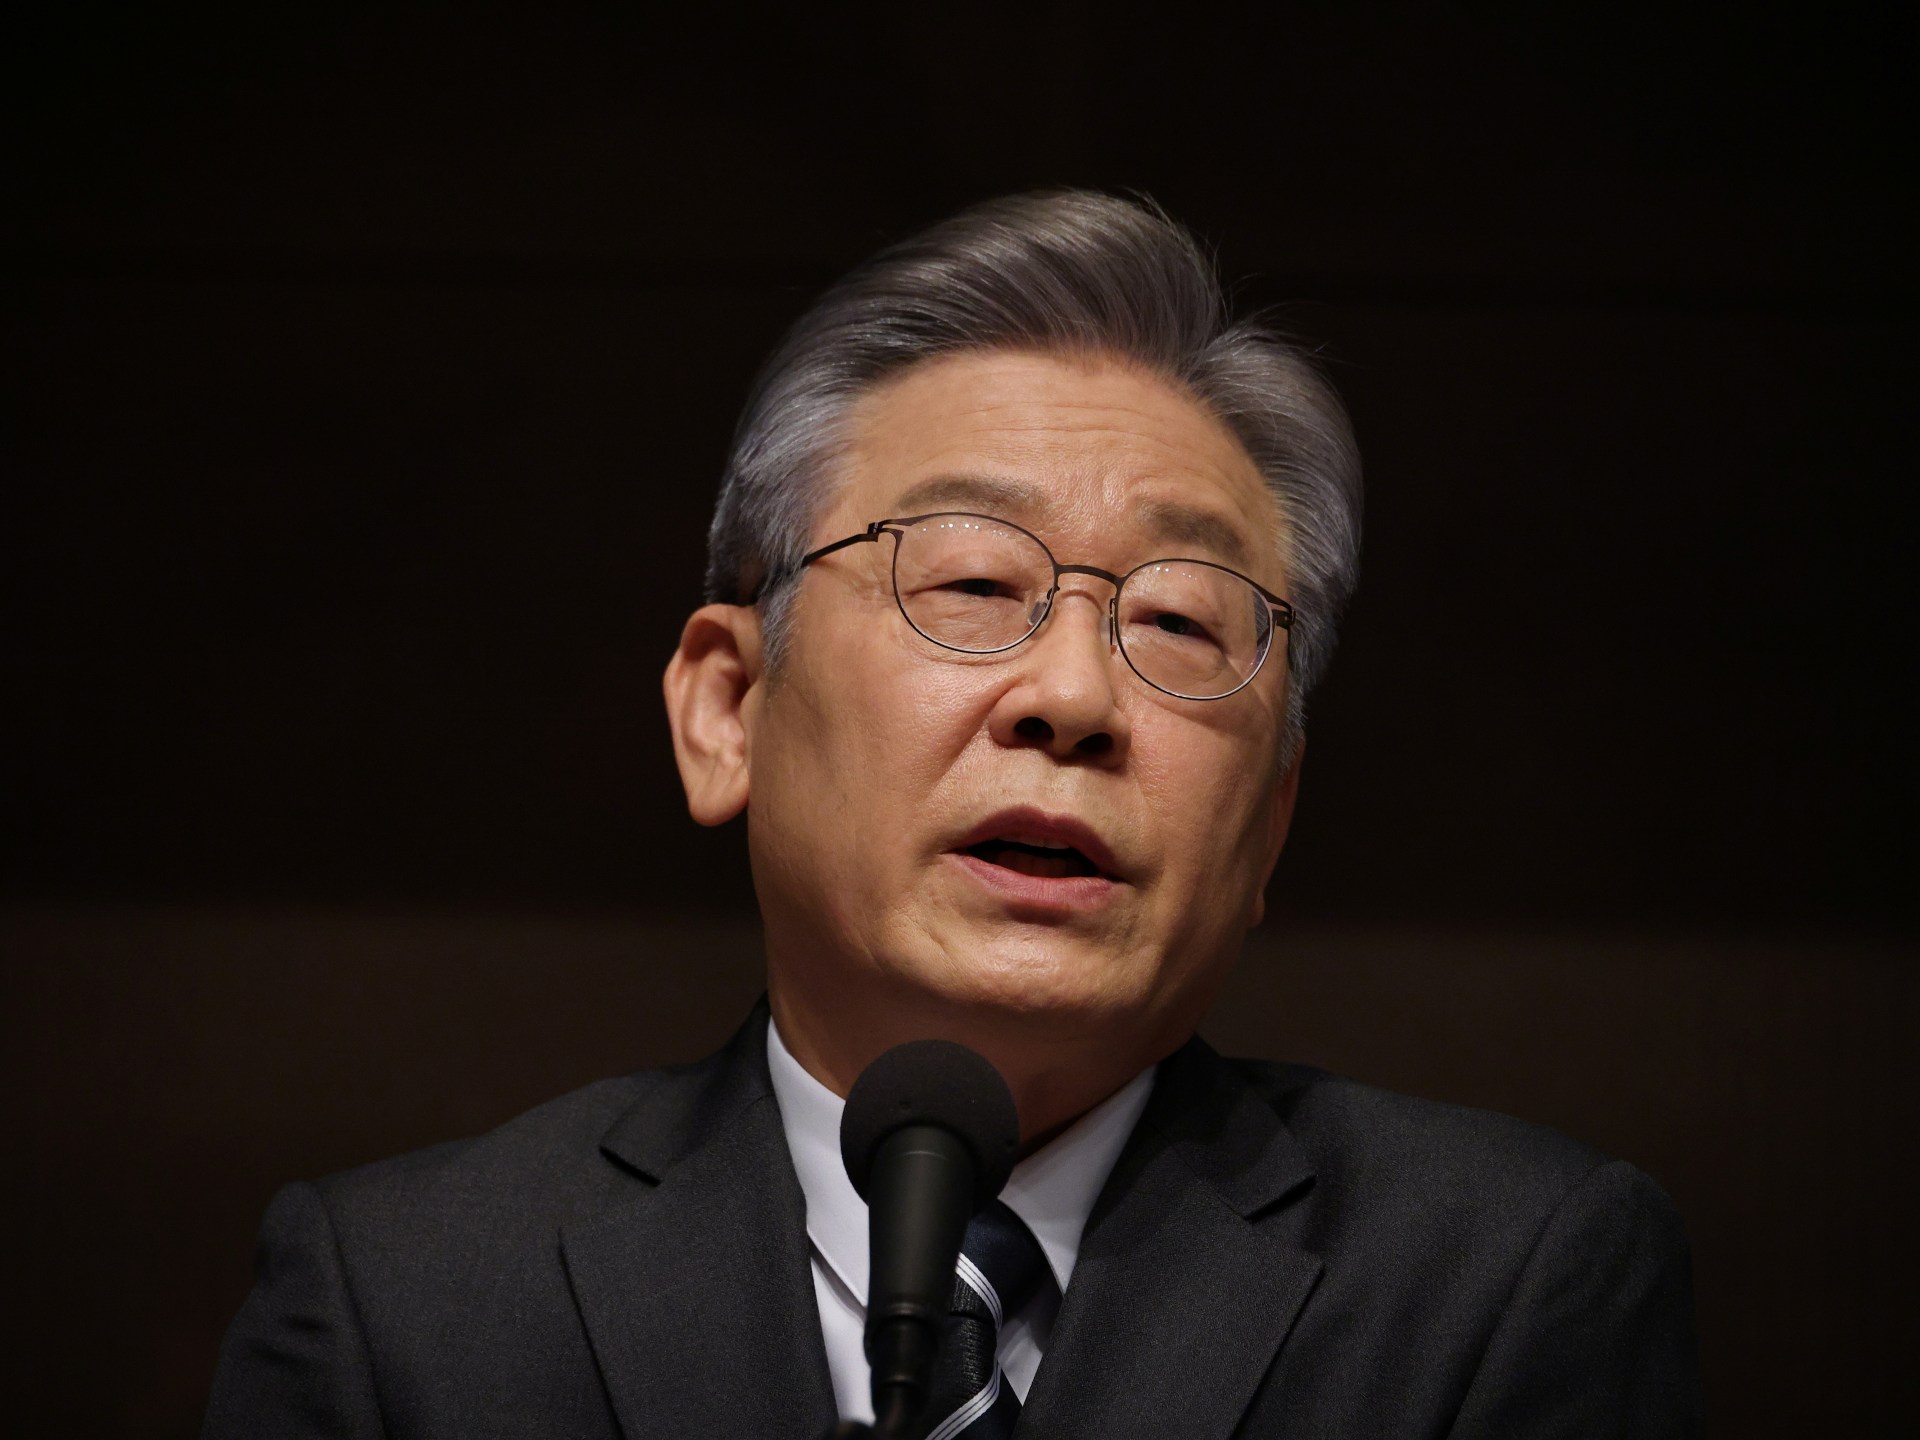 부패 혐의로 기소된 한국 야당 지도자 |  비즈니스 및 경제 뉴스